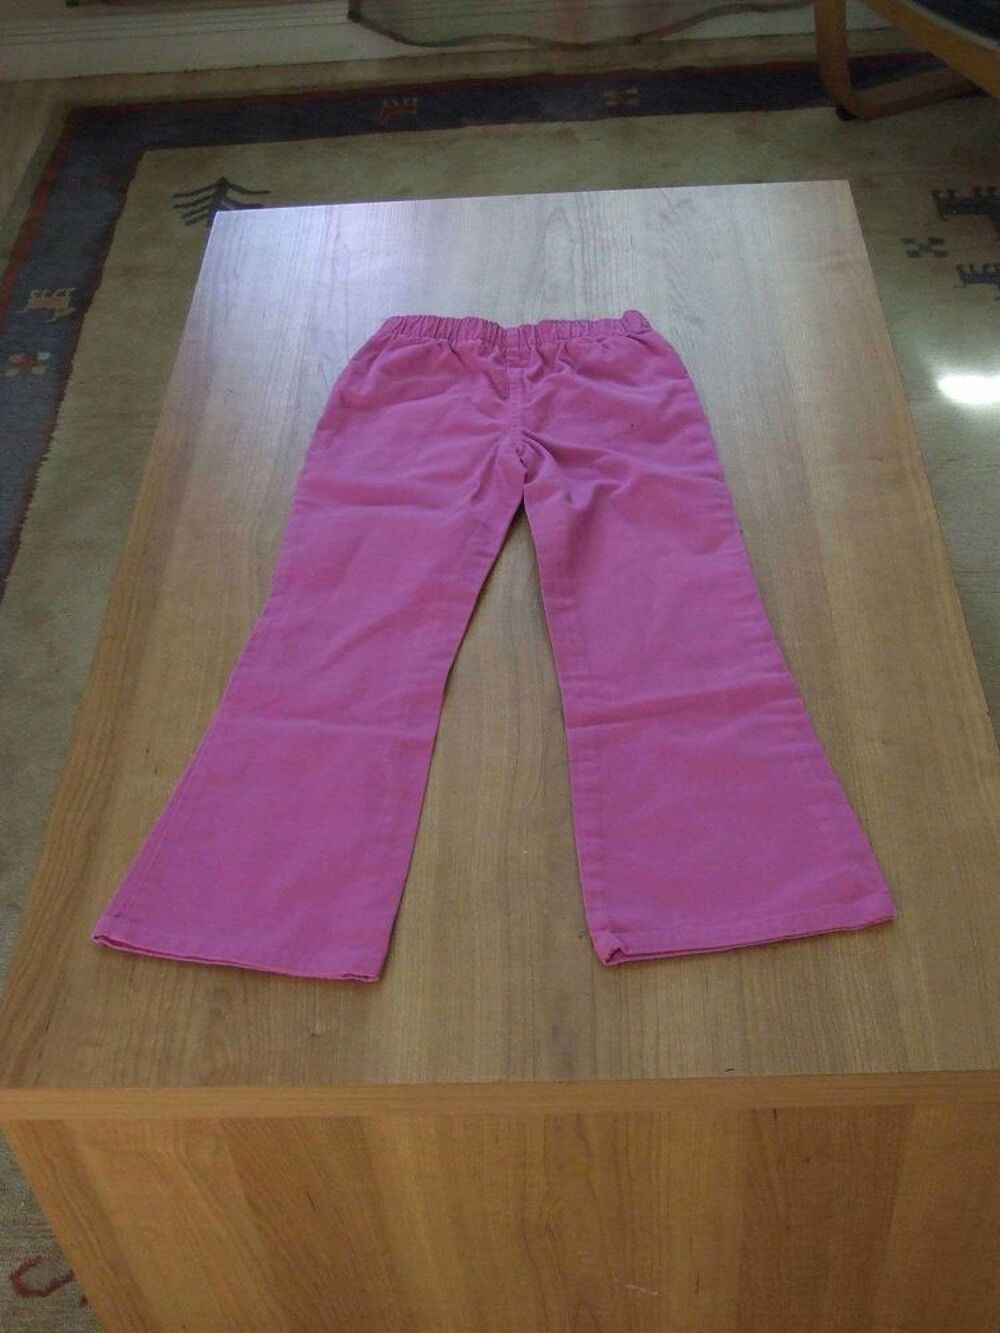 Pantalon coupe droite, Rose fonc&eacute;, 8&nbsp;ans (126&nbsp;cm) TBE Vtements enfants